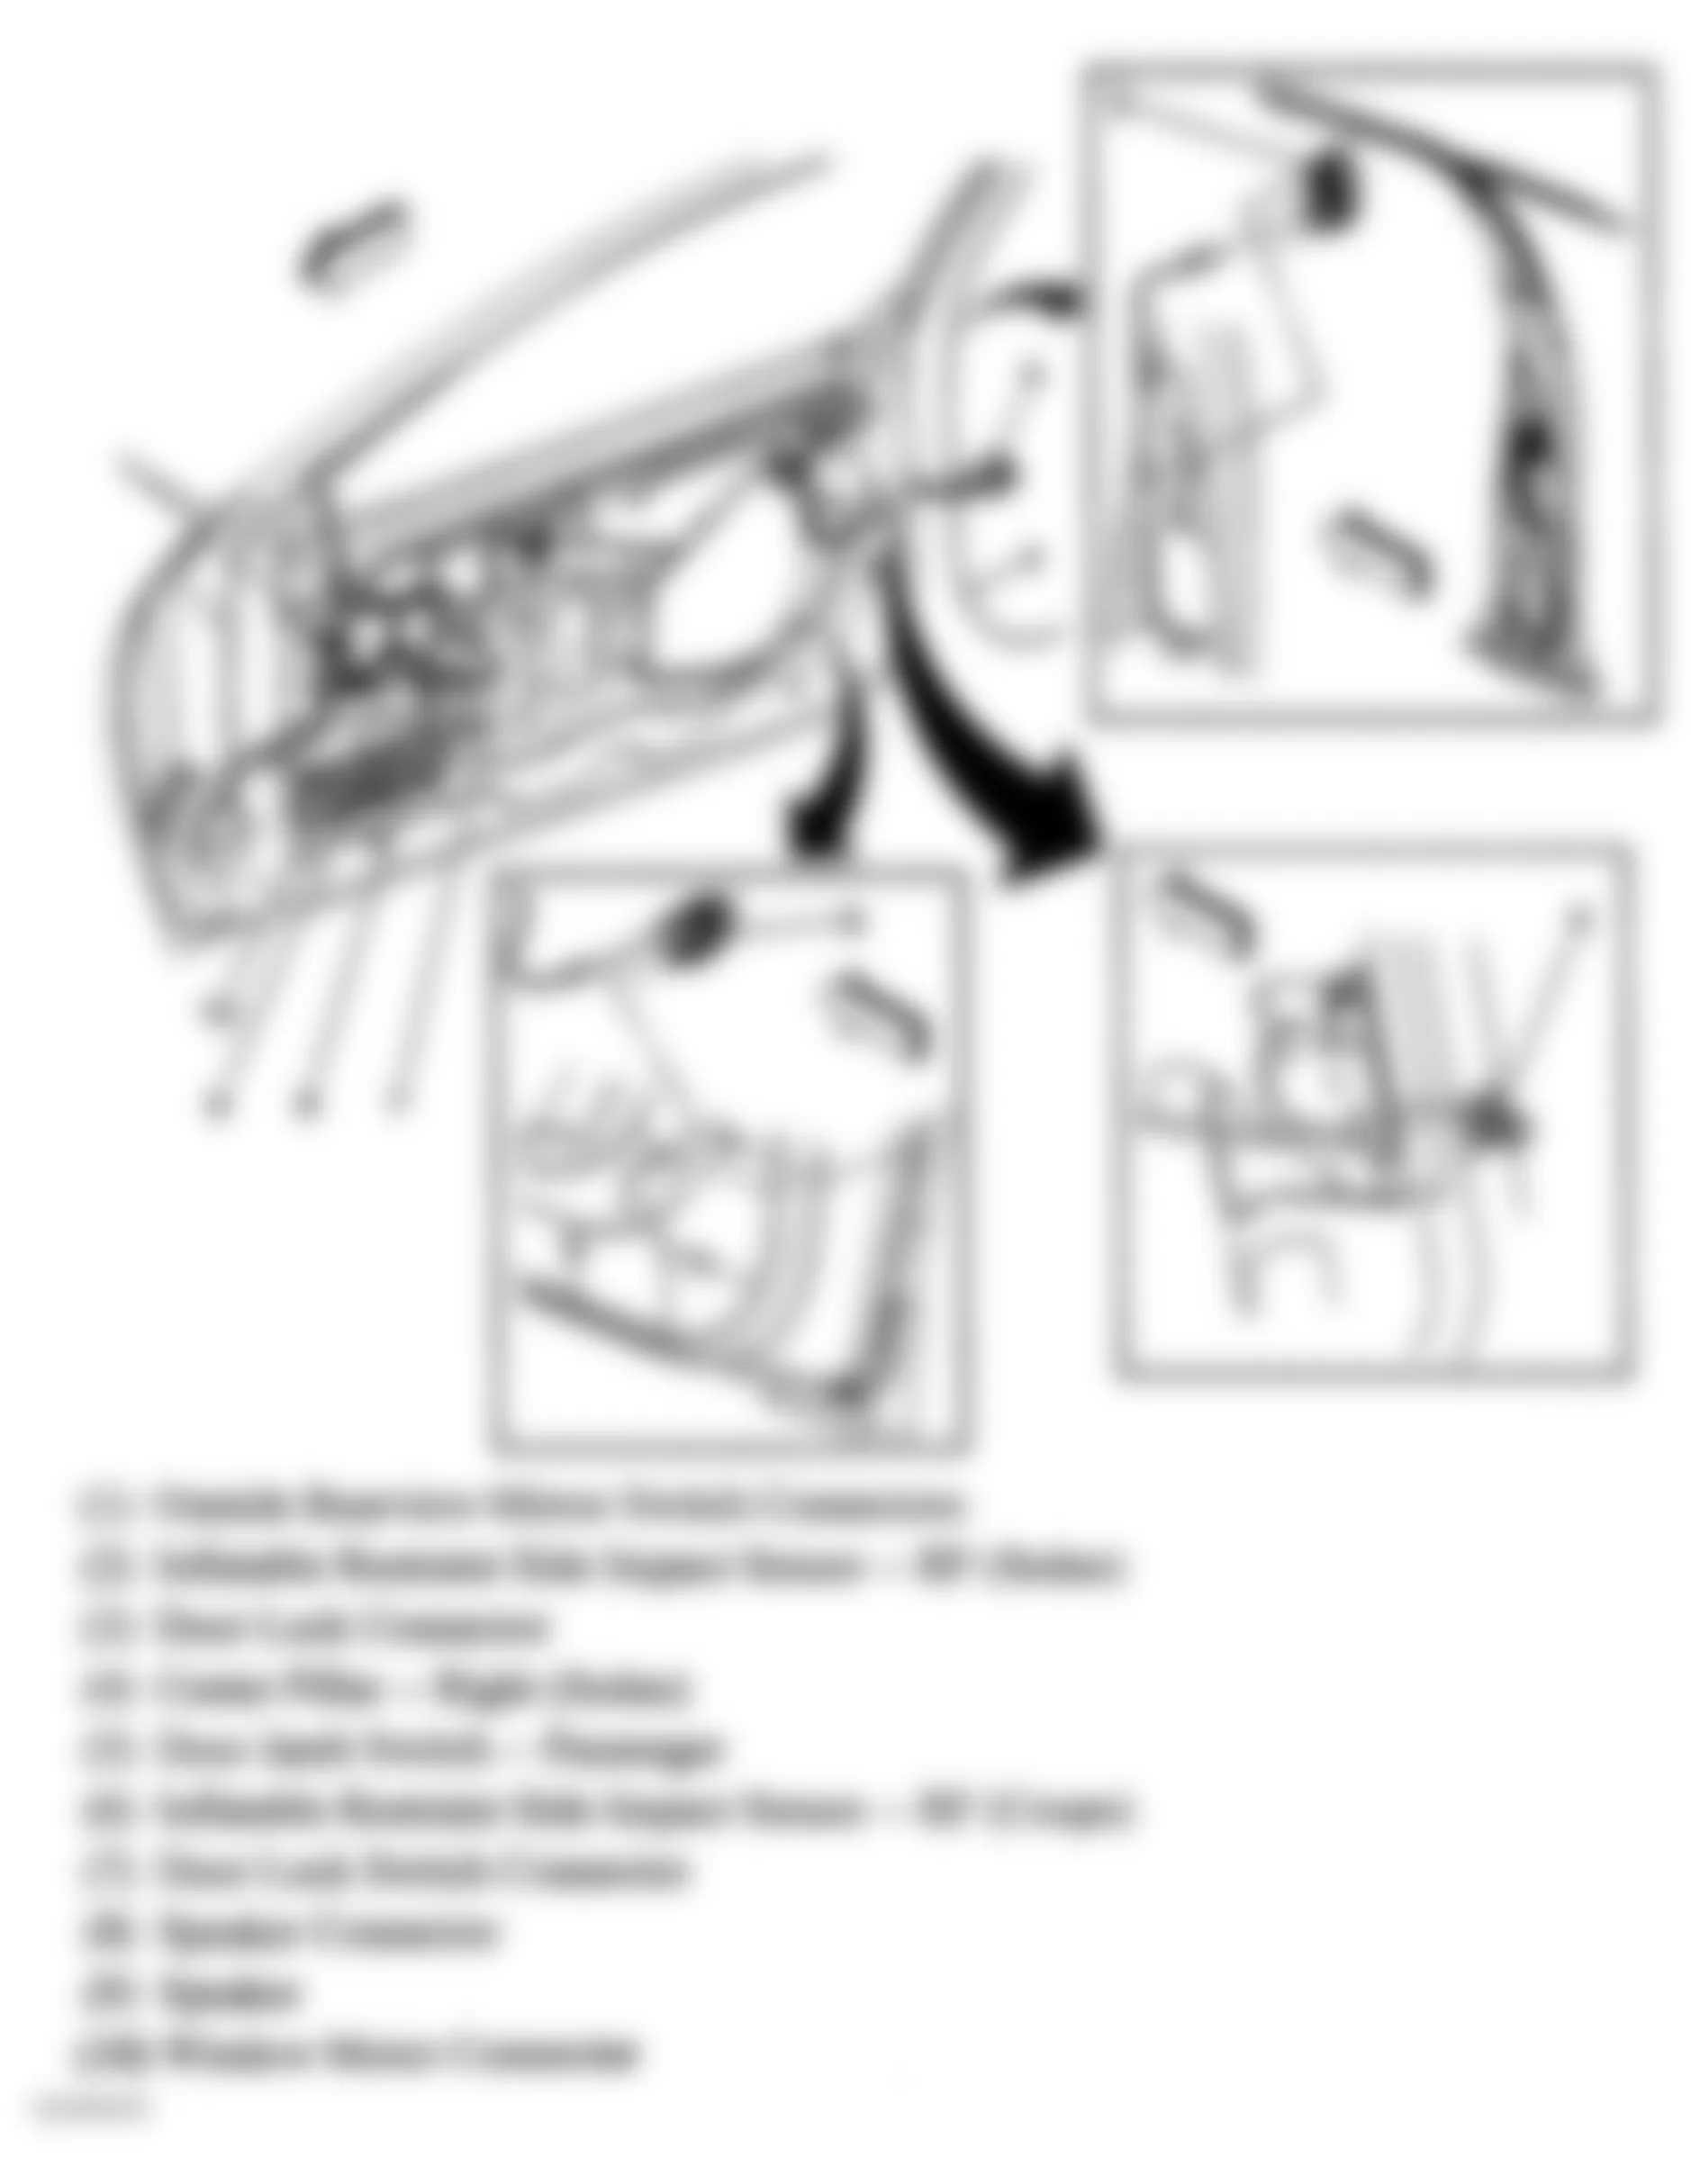 Chevrolet Cavalier LS Sport 2004 - Component Locations -  Passenger Door & Right B Pillar